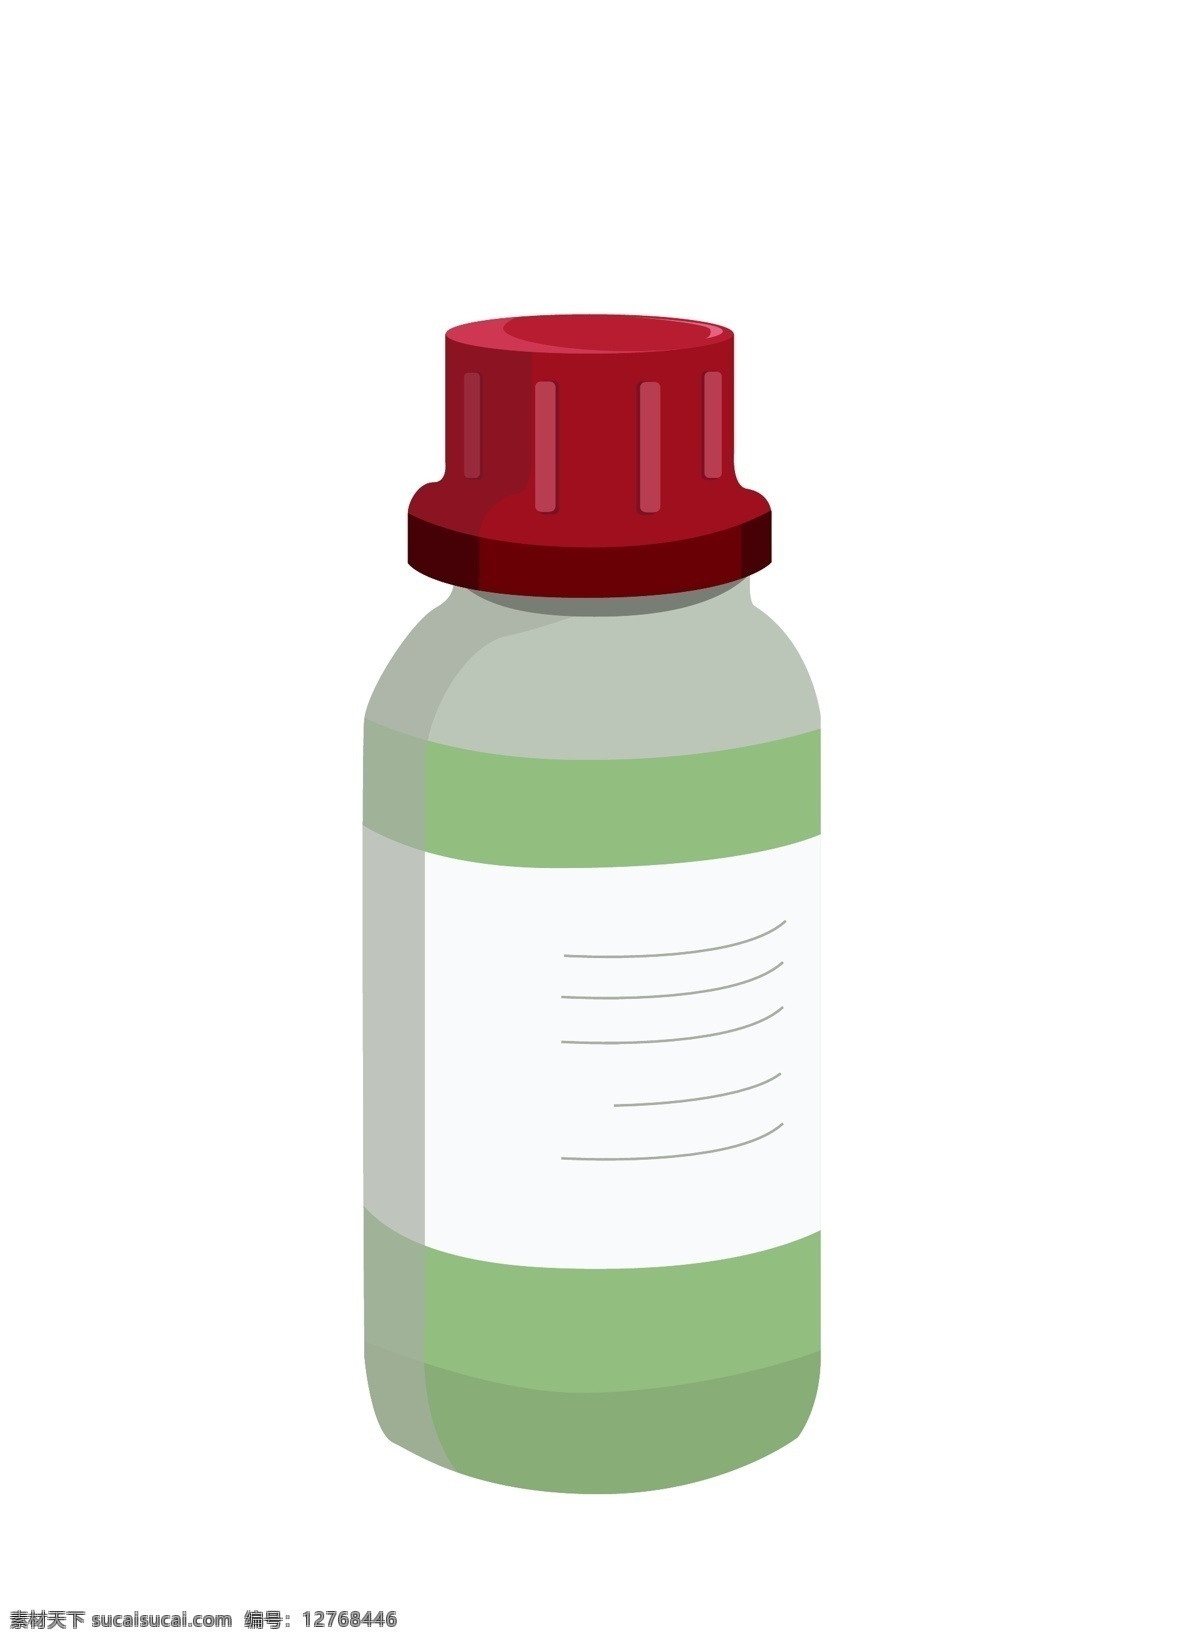 卡通 绿色 药瓶 插画 绿色的药瓶 实验用品插画 化学用品 卡通药瓶插画 红色的瓶盖 白色的标签